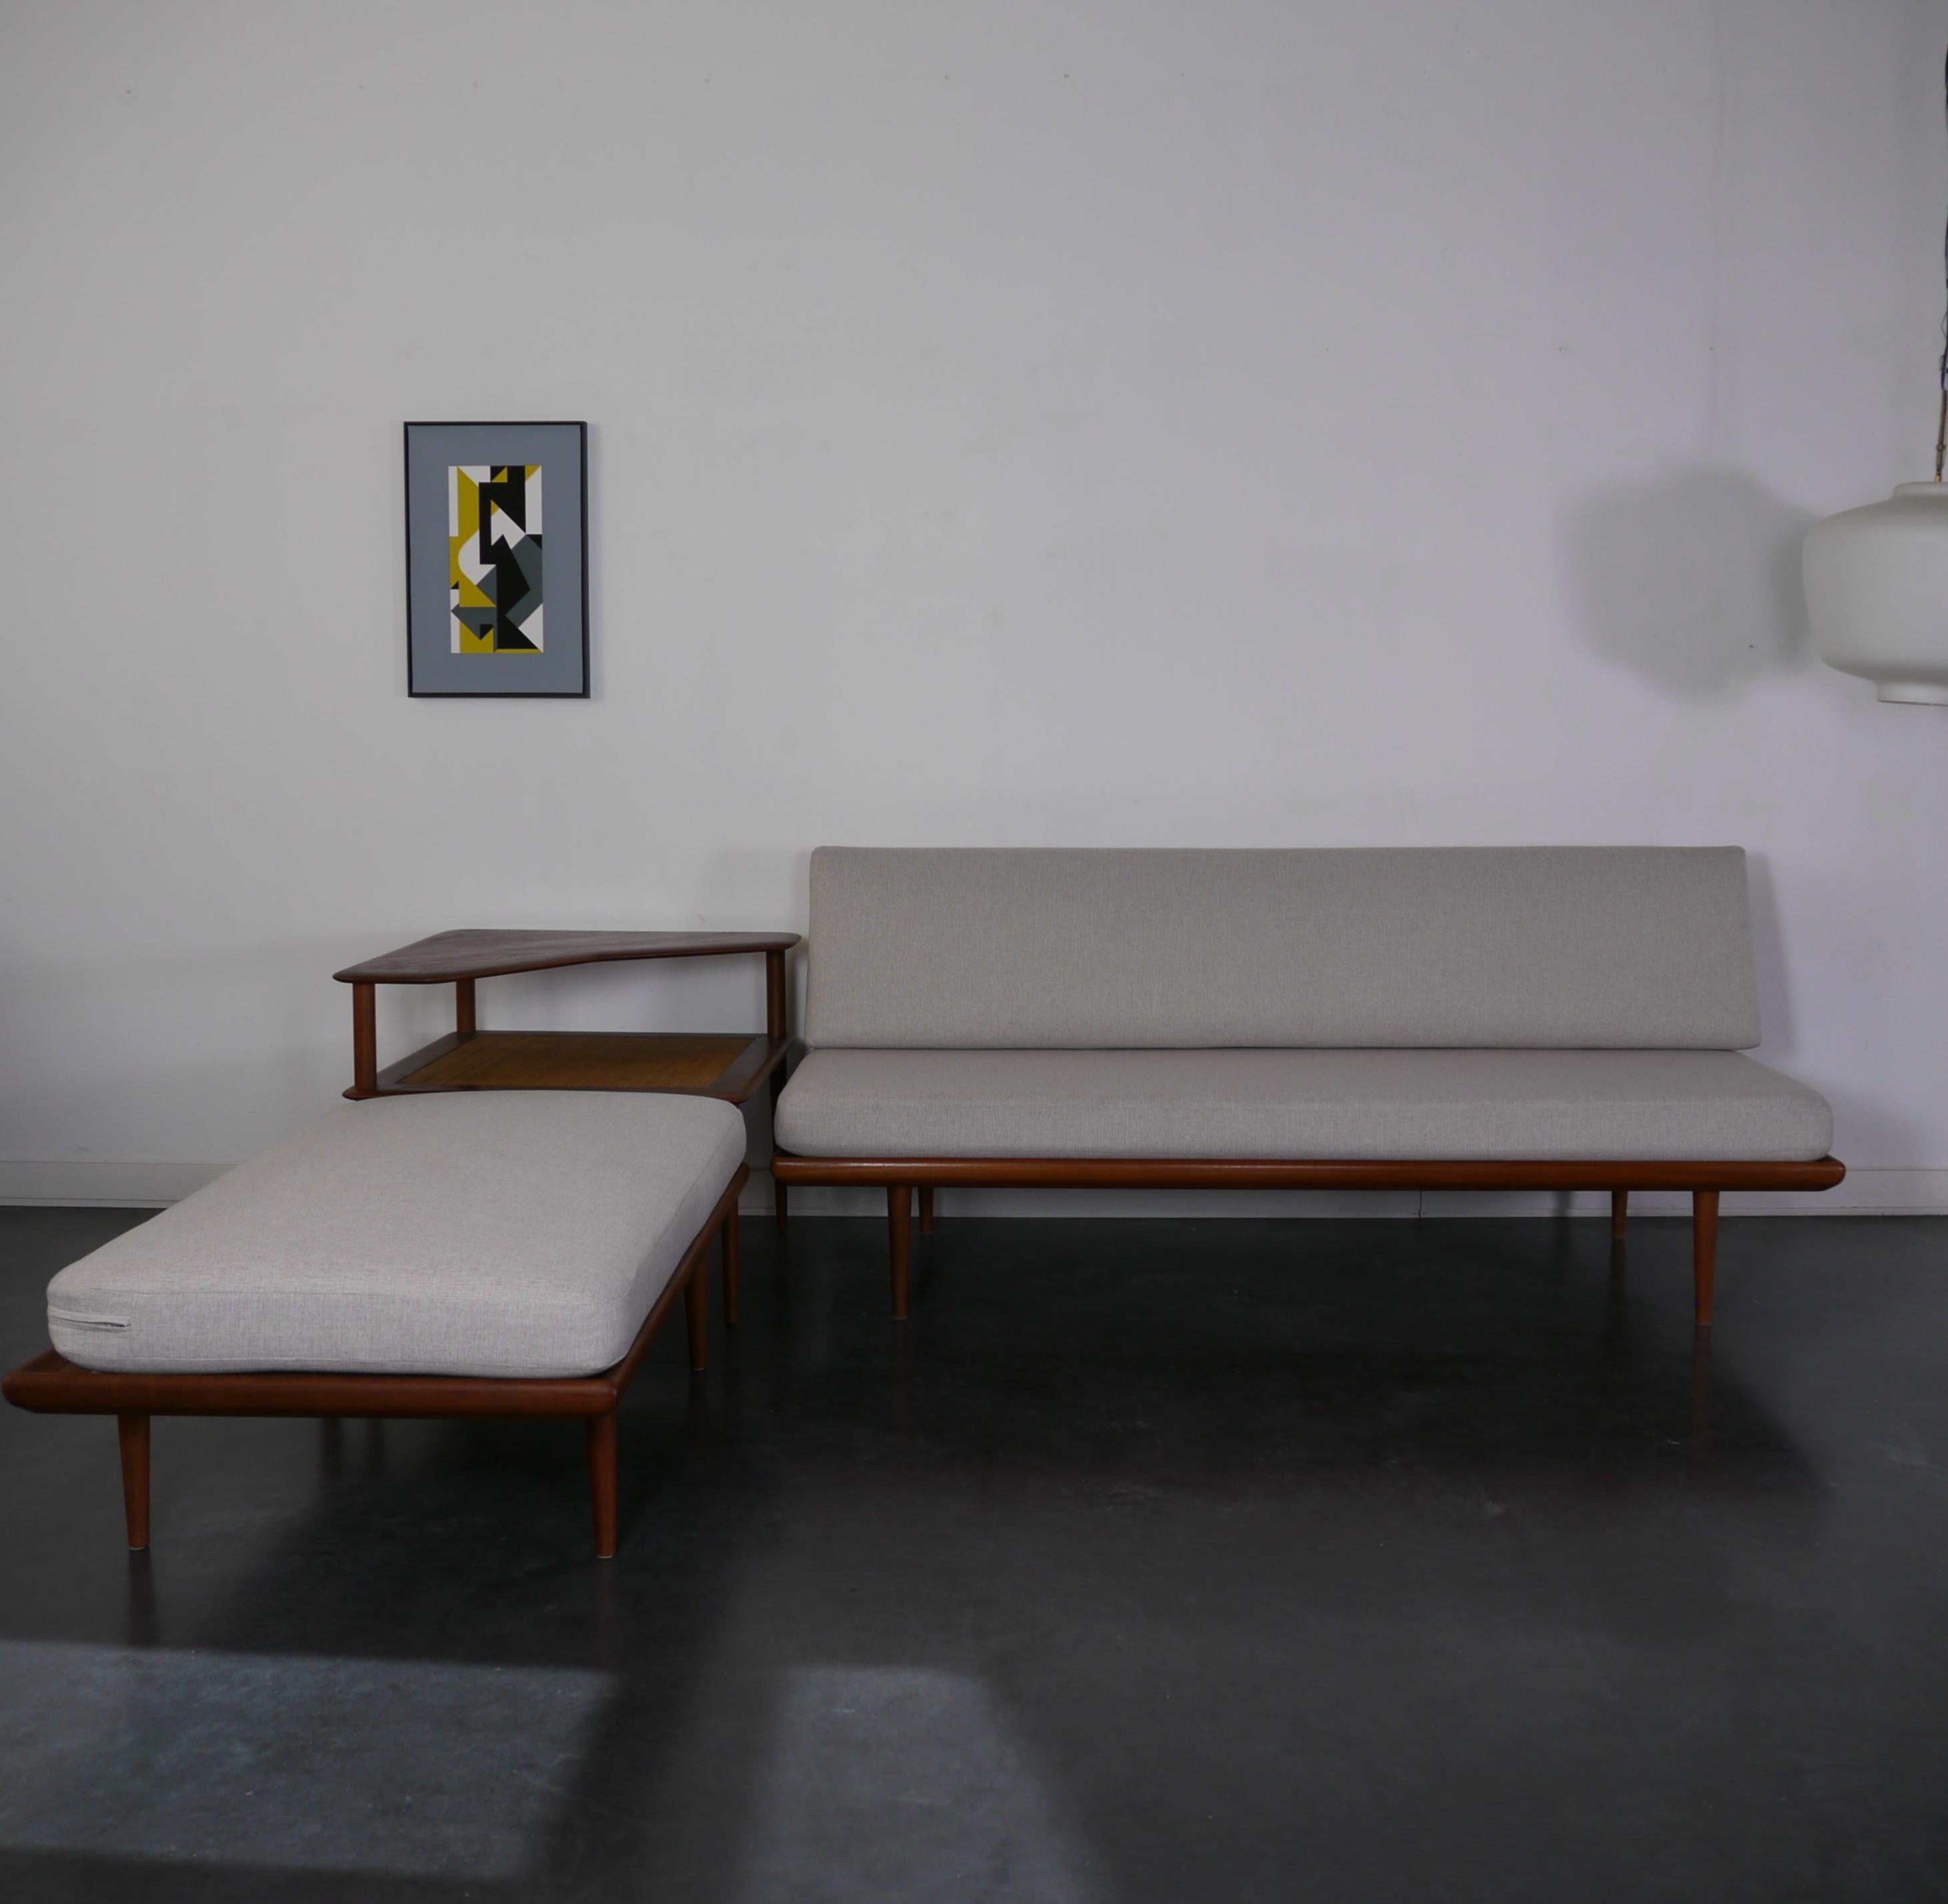 Cet ensemble de salon modulaire a été conçu par les architectes danois Peter Hvidt & Orla Mølgaard Nielsen. Il a été produit au Danemark par France & Daverkosen dans les années 1950. L'ensemble comprend un canapé 2 places modèle FD 418a, un canapé 3